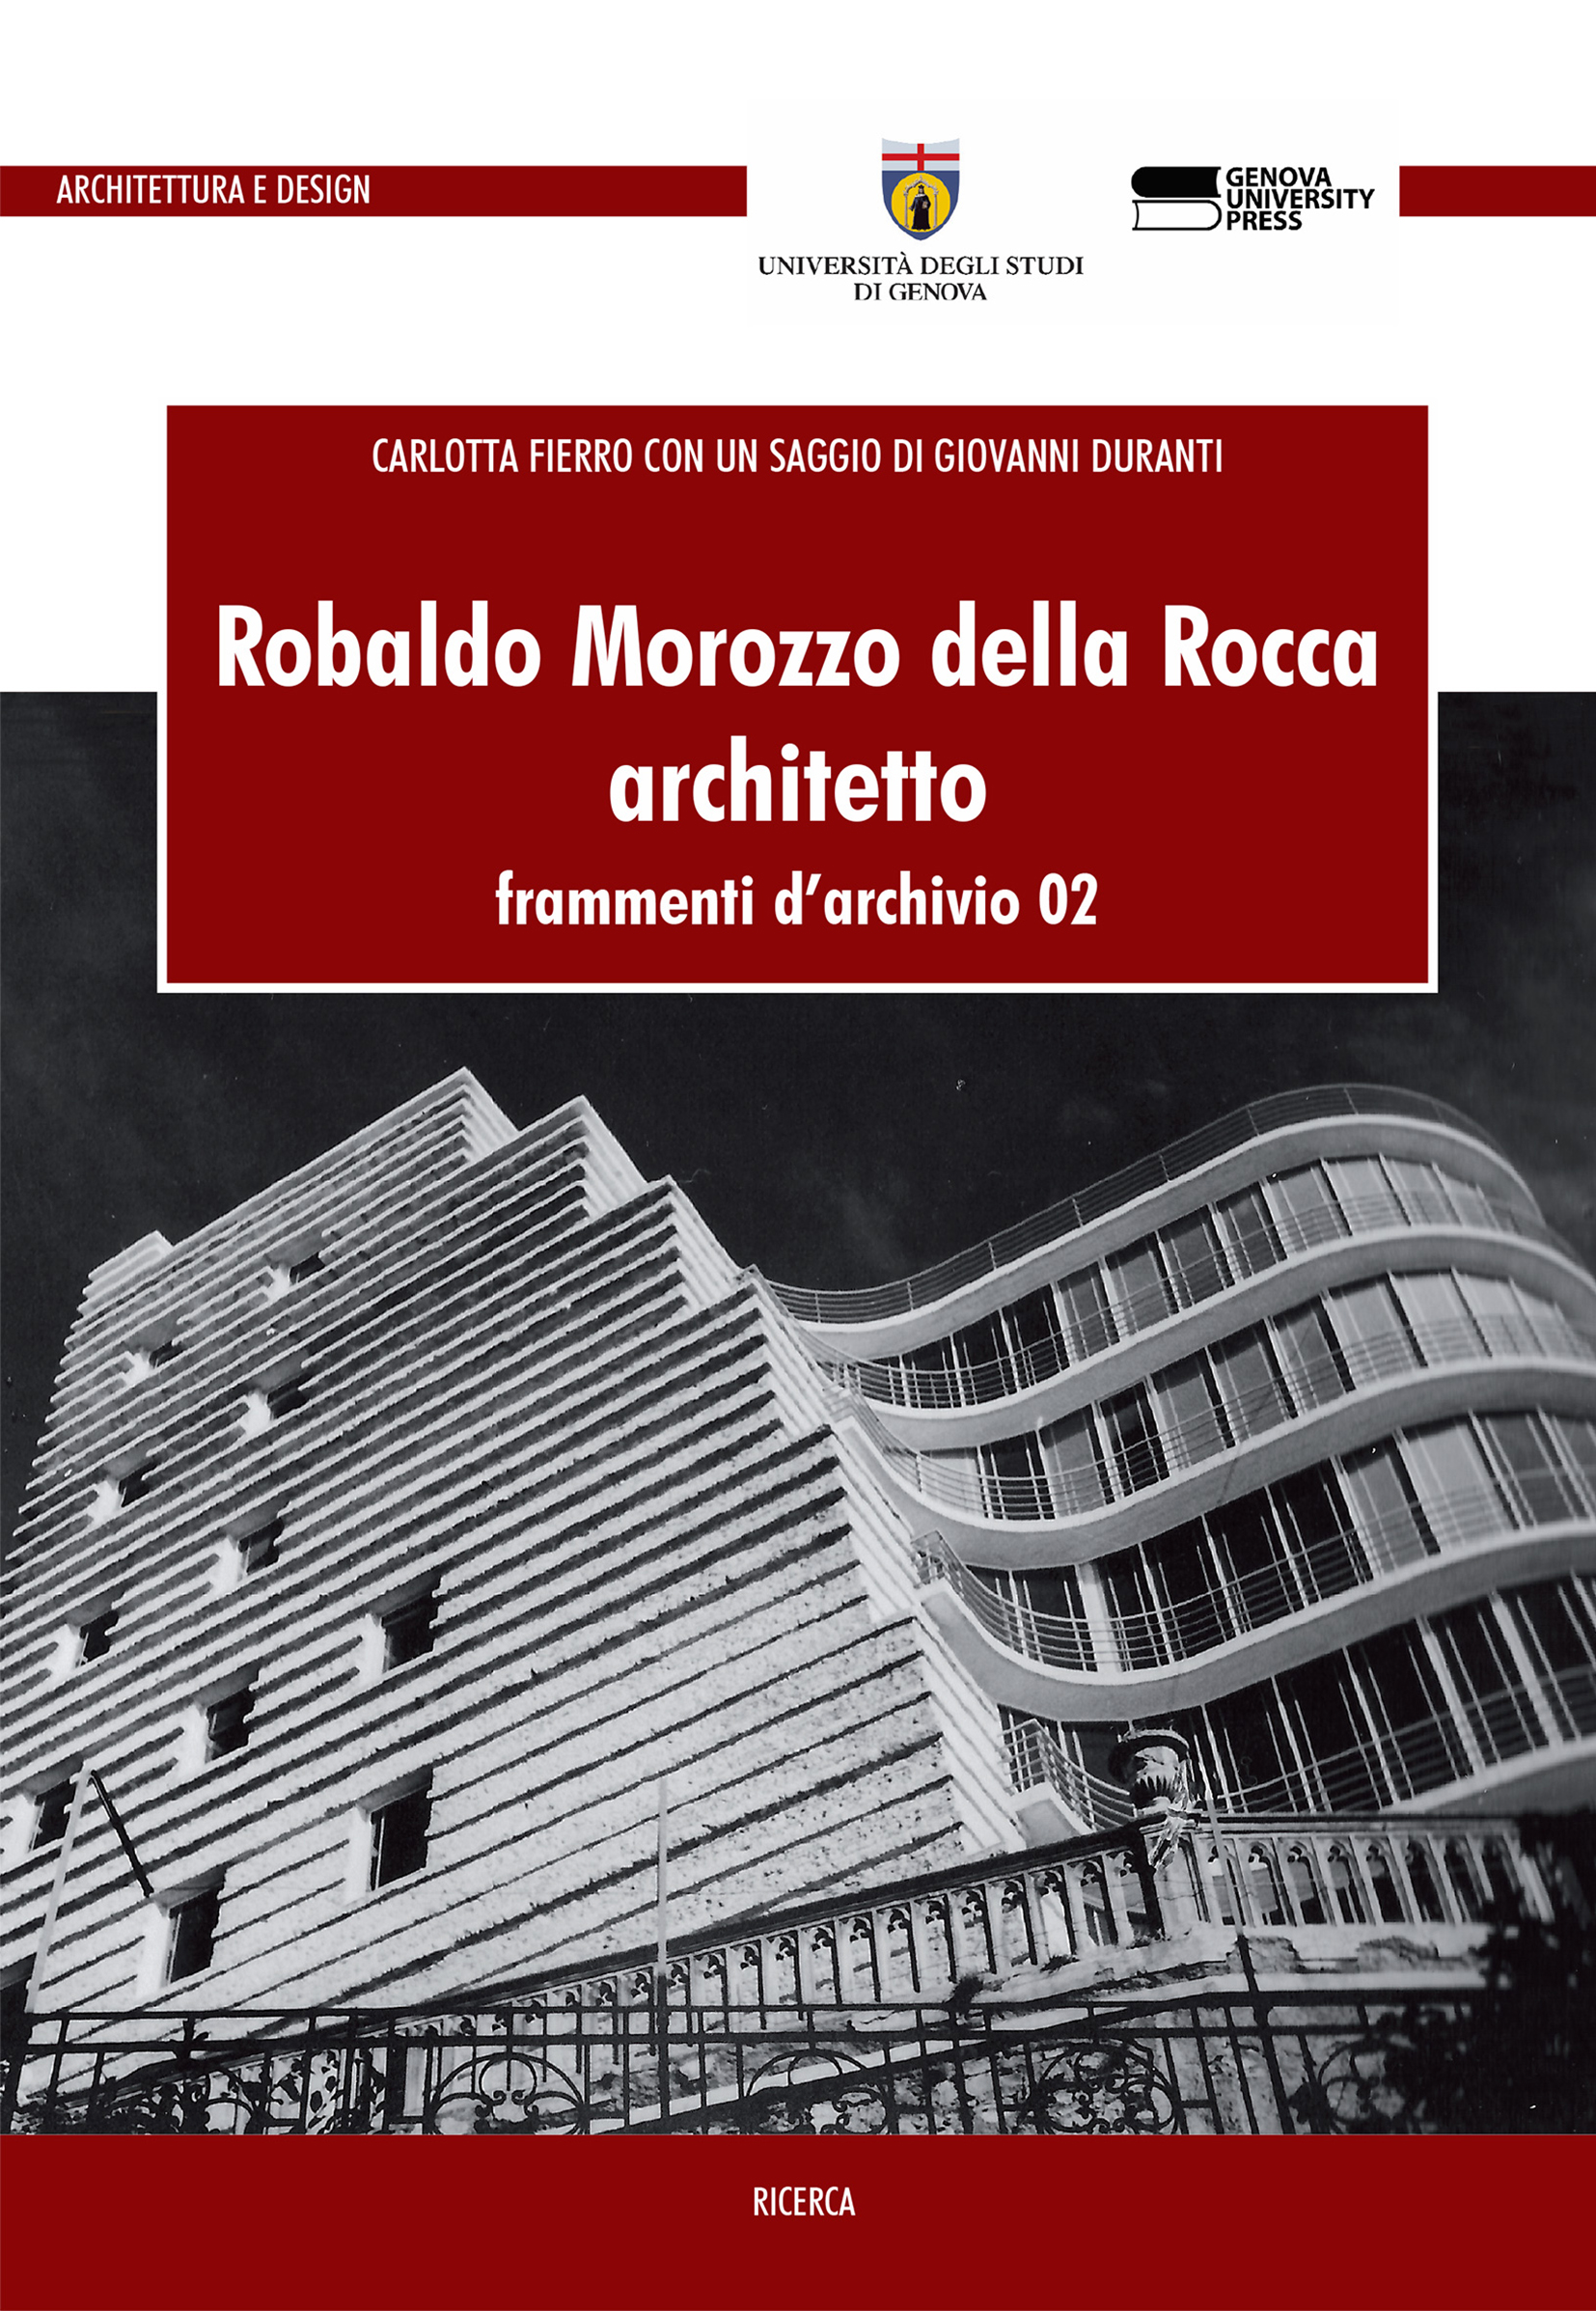 Robaldo Morozzo della Rocca architetto frammenti d'archivio 02